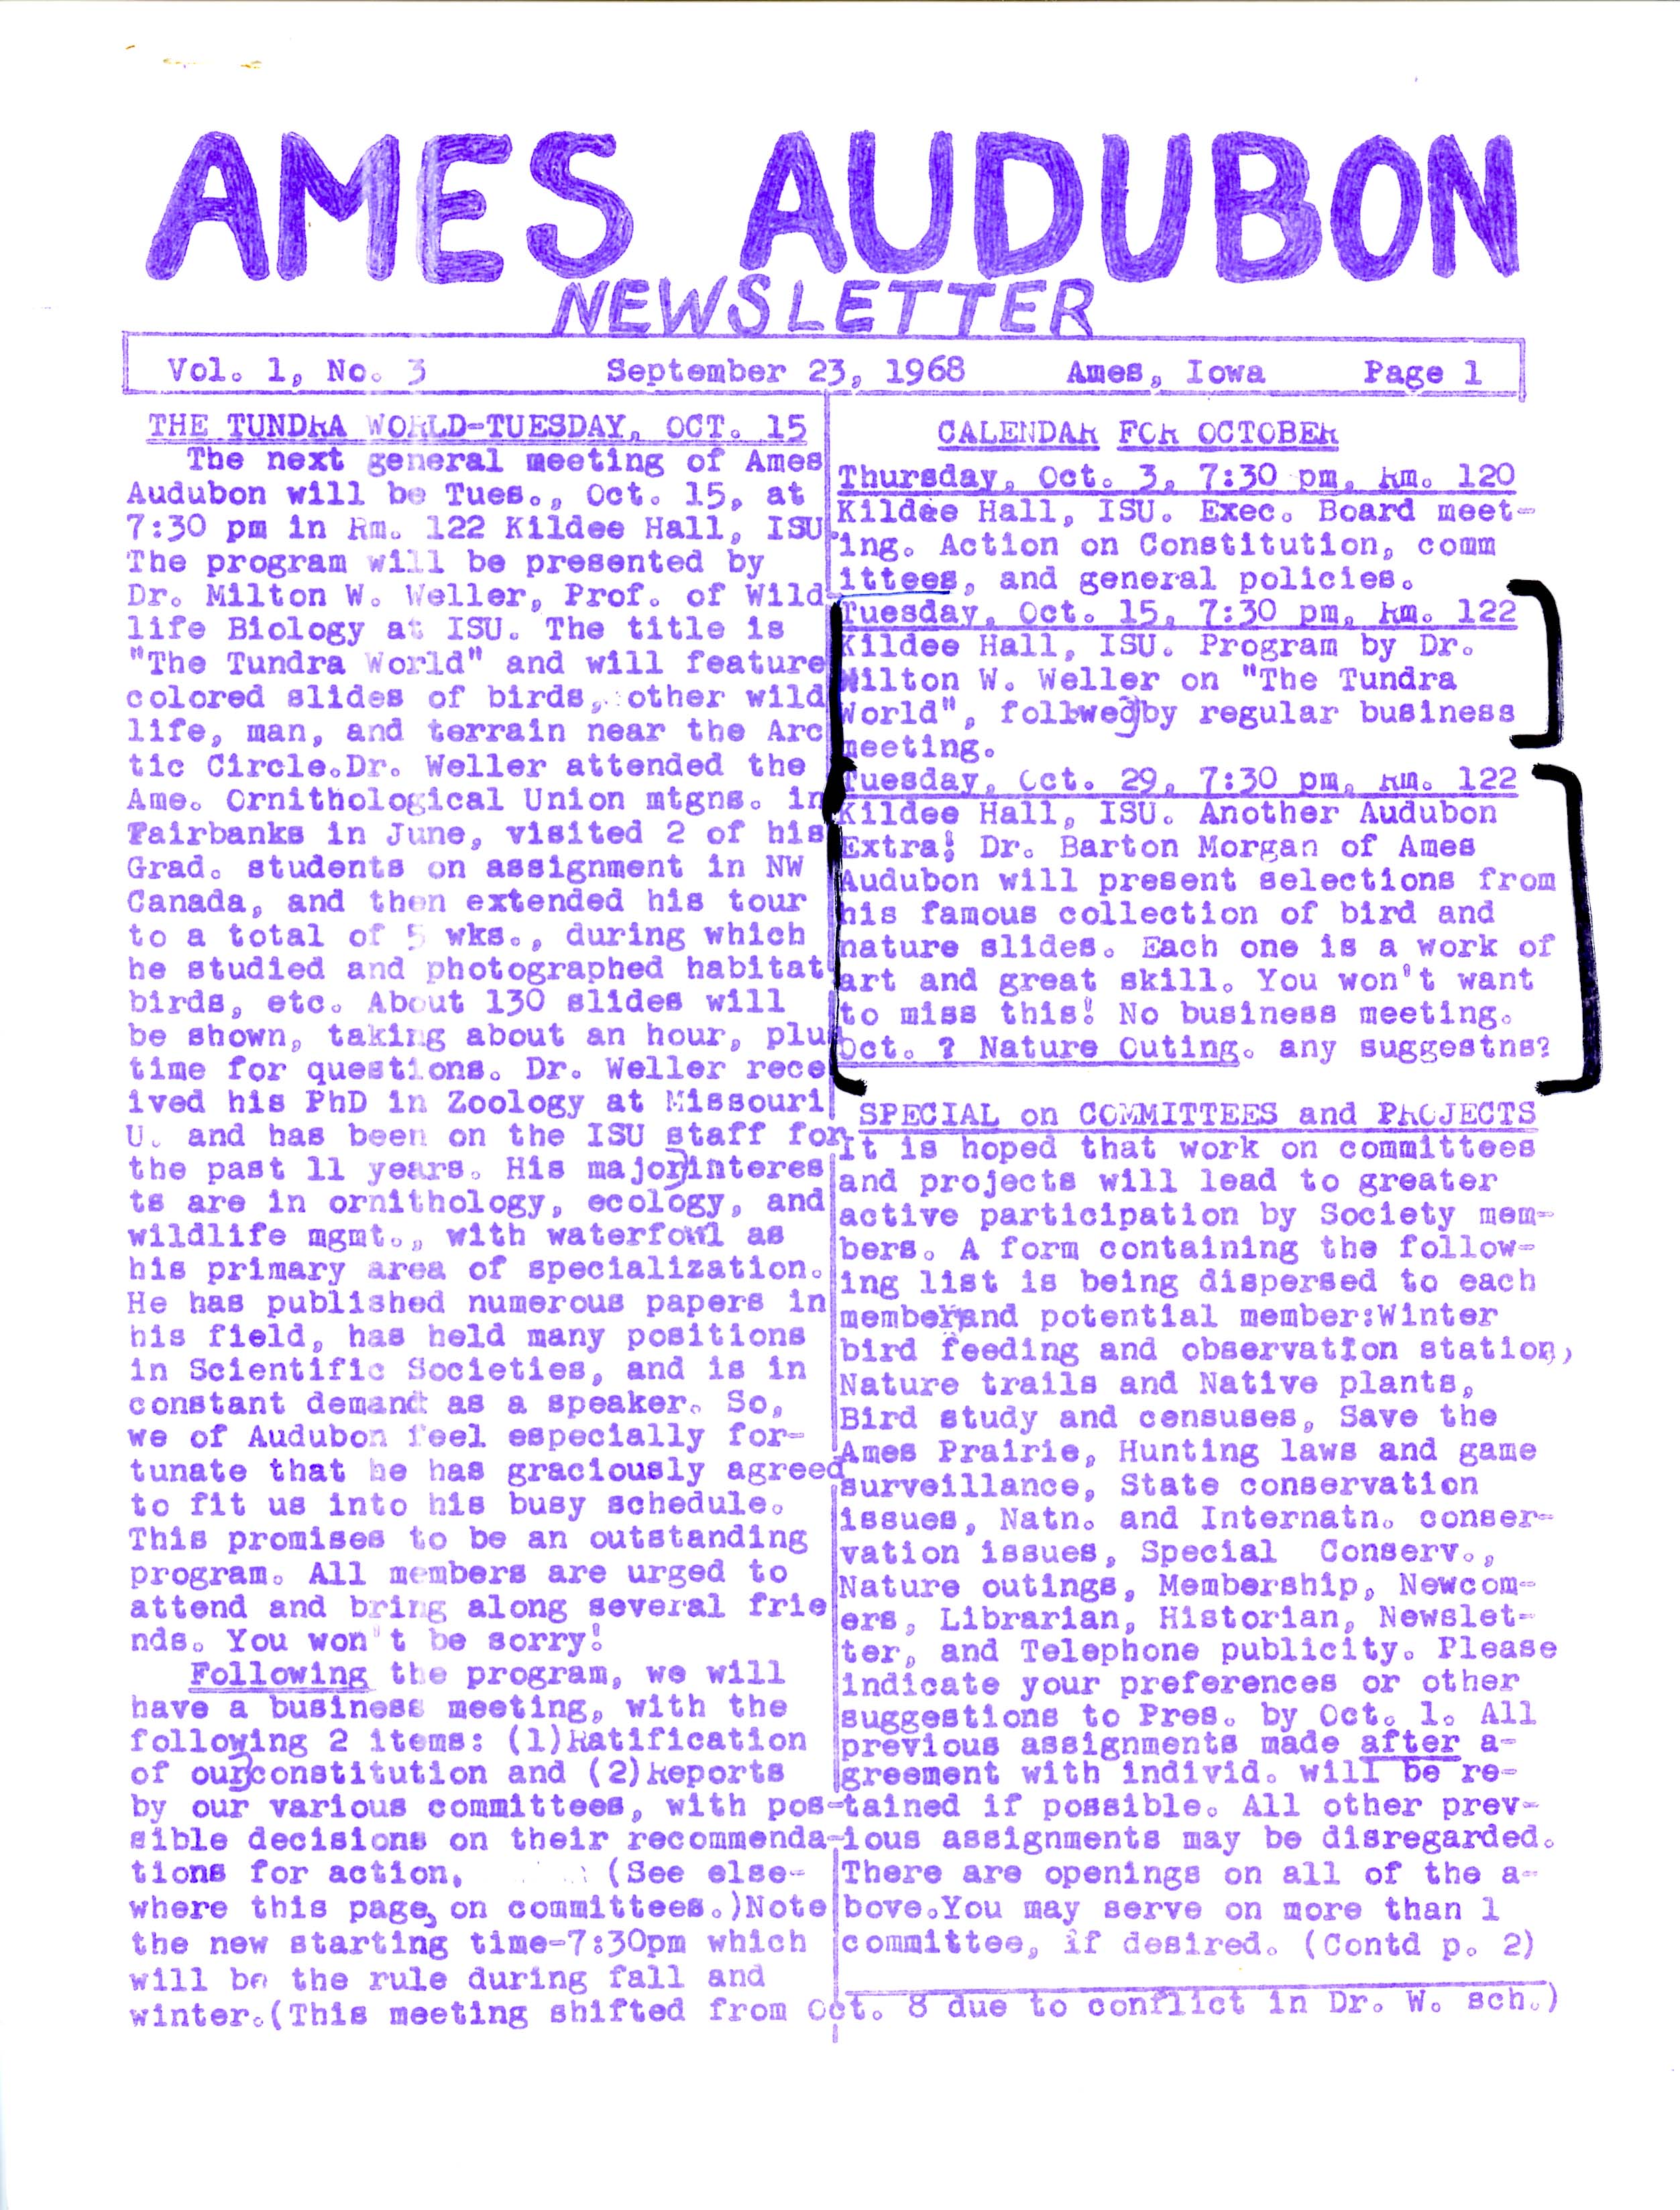 Ames Audubon Newsletter, Volume 1, Number 3, September 23, 1968